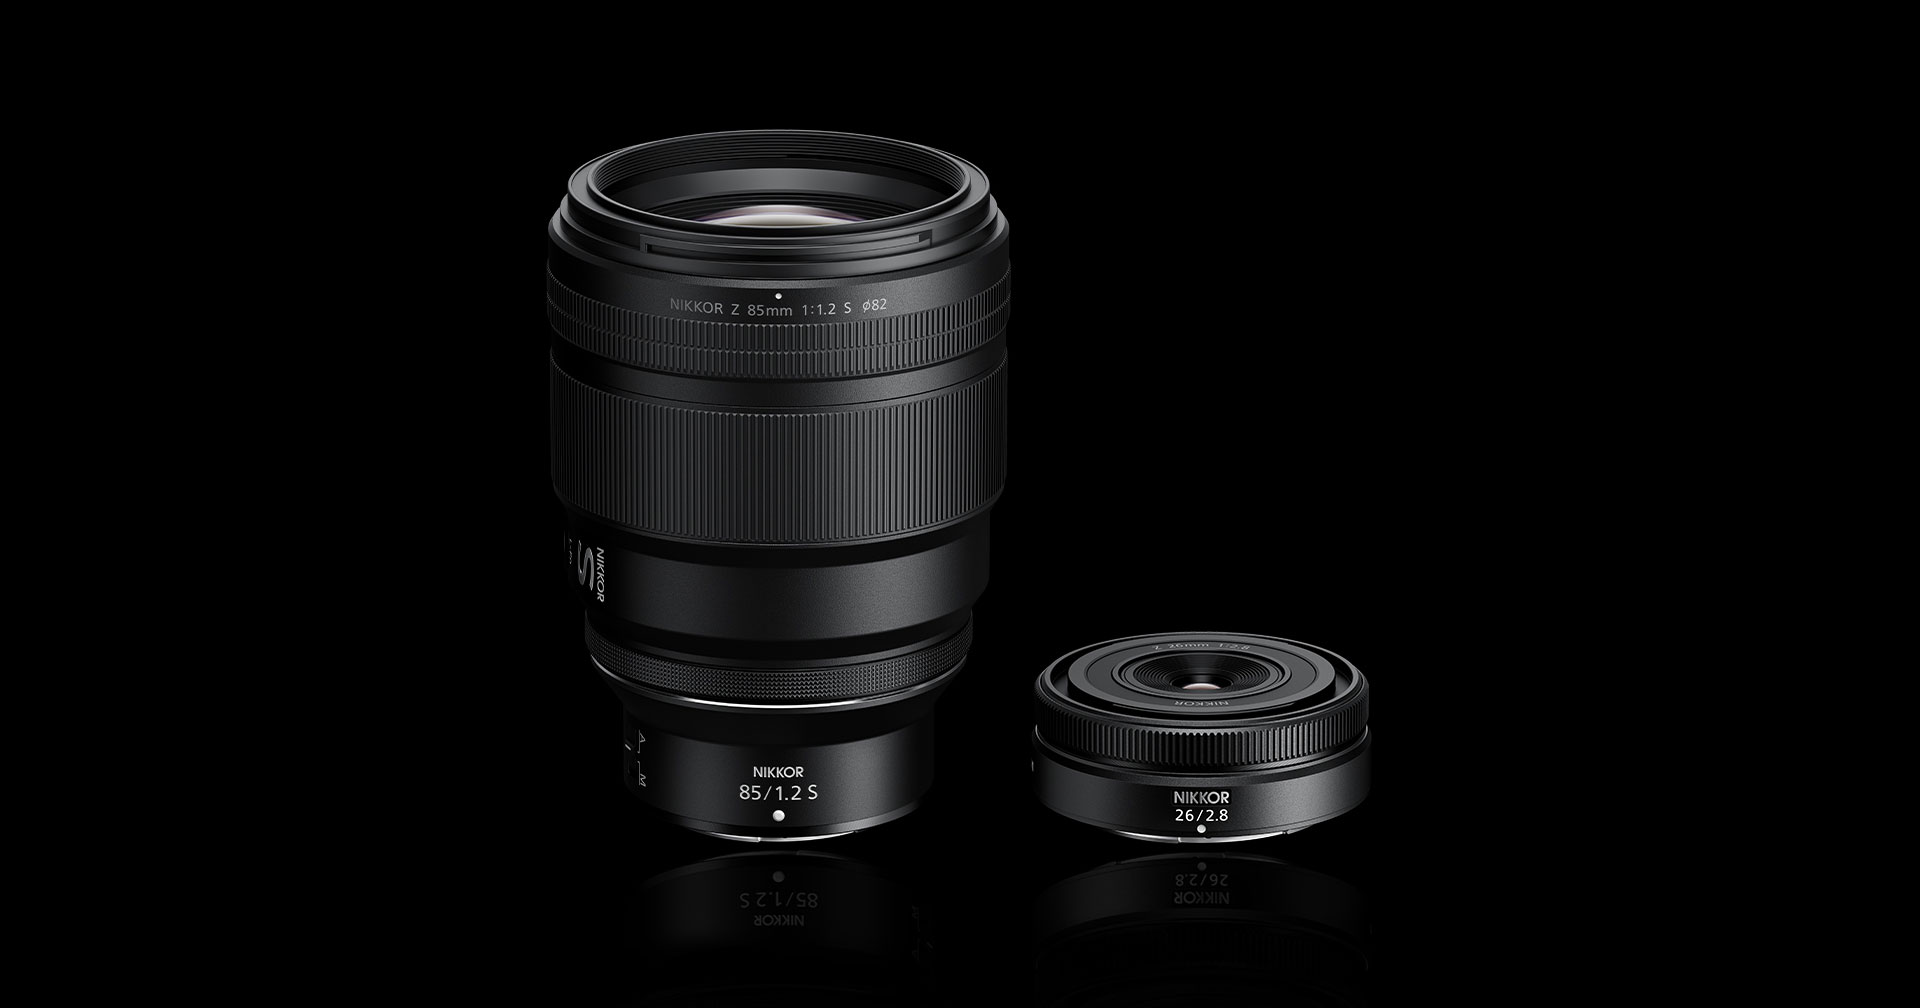 มาแล้ว! Nikon ประกาศพัฒนาเลนส์ Nikkor Z 85mm F1.2 S และ 26mm F2.8 สำหรับกล้อง Z-mount